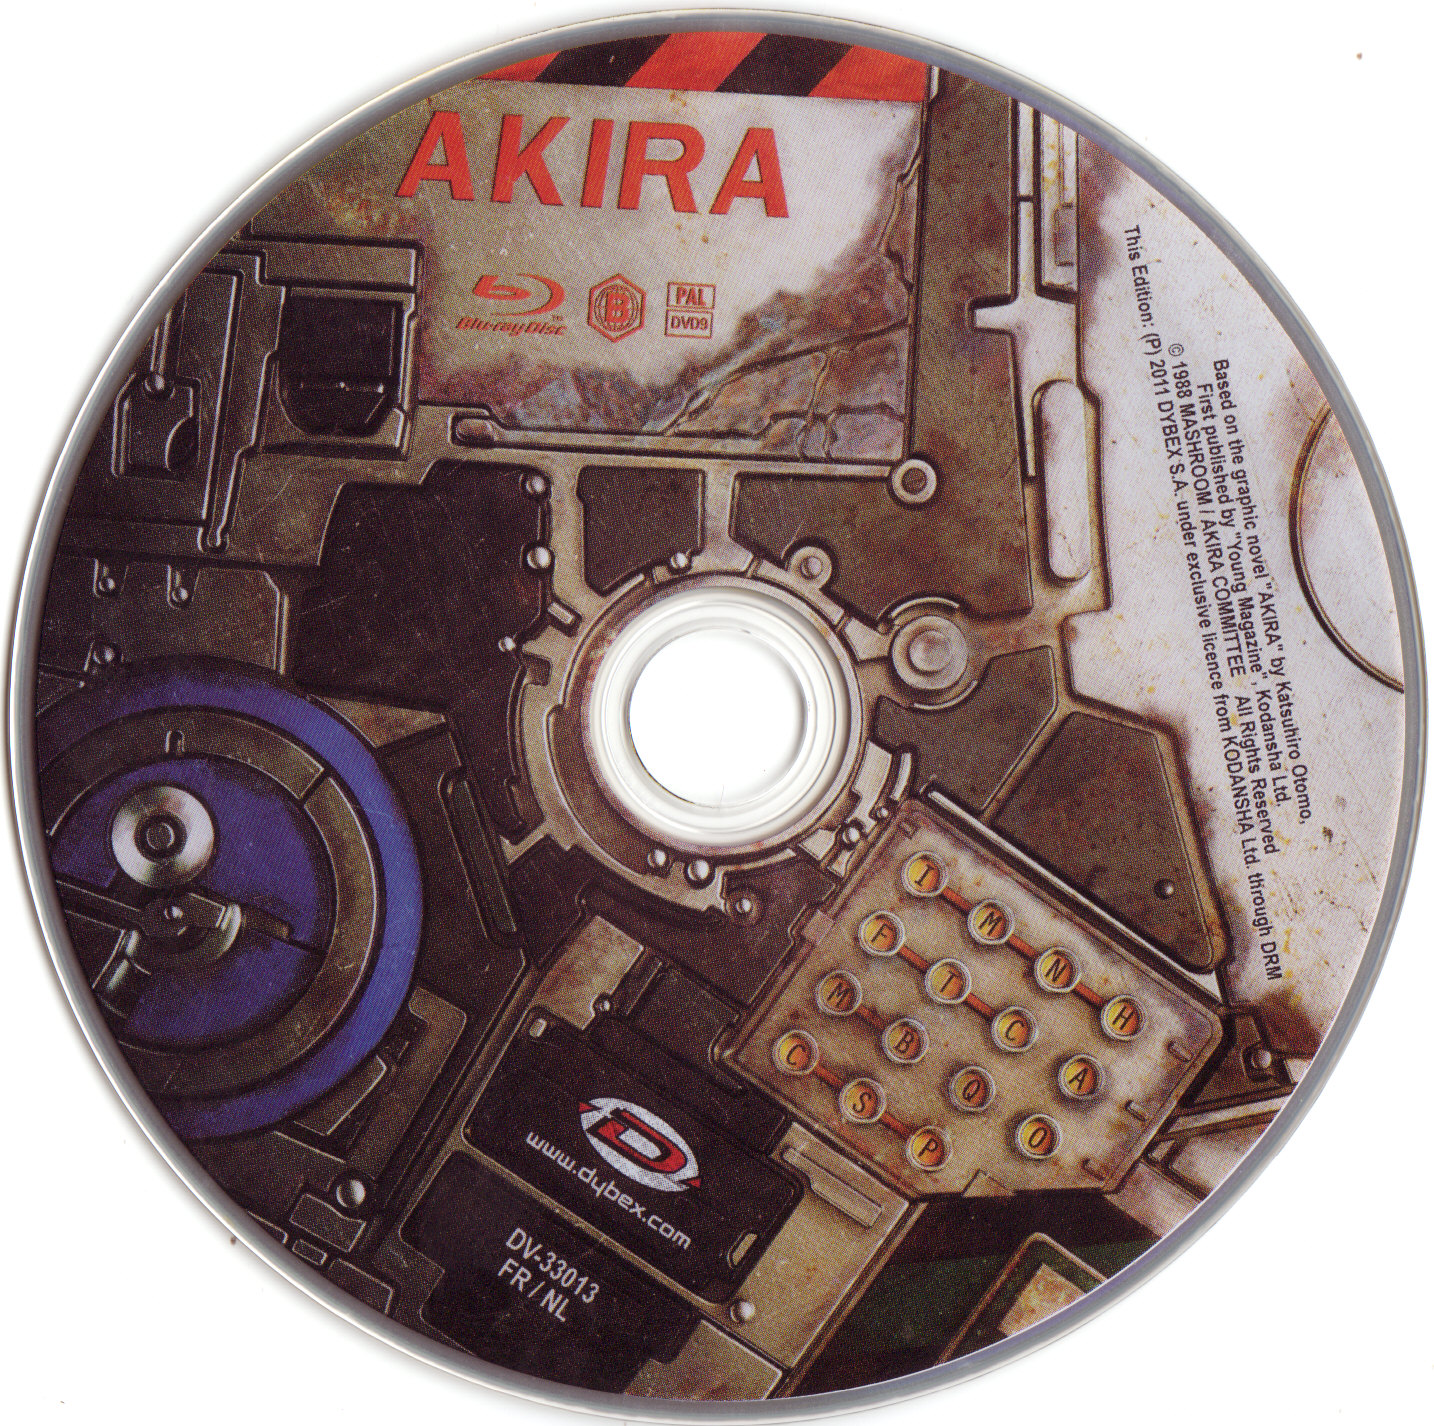 Akira (BLU-RAY)